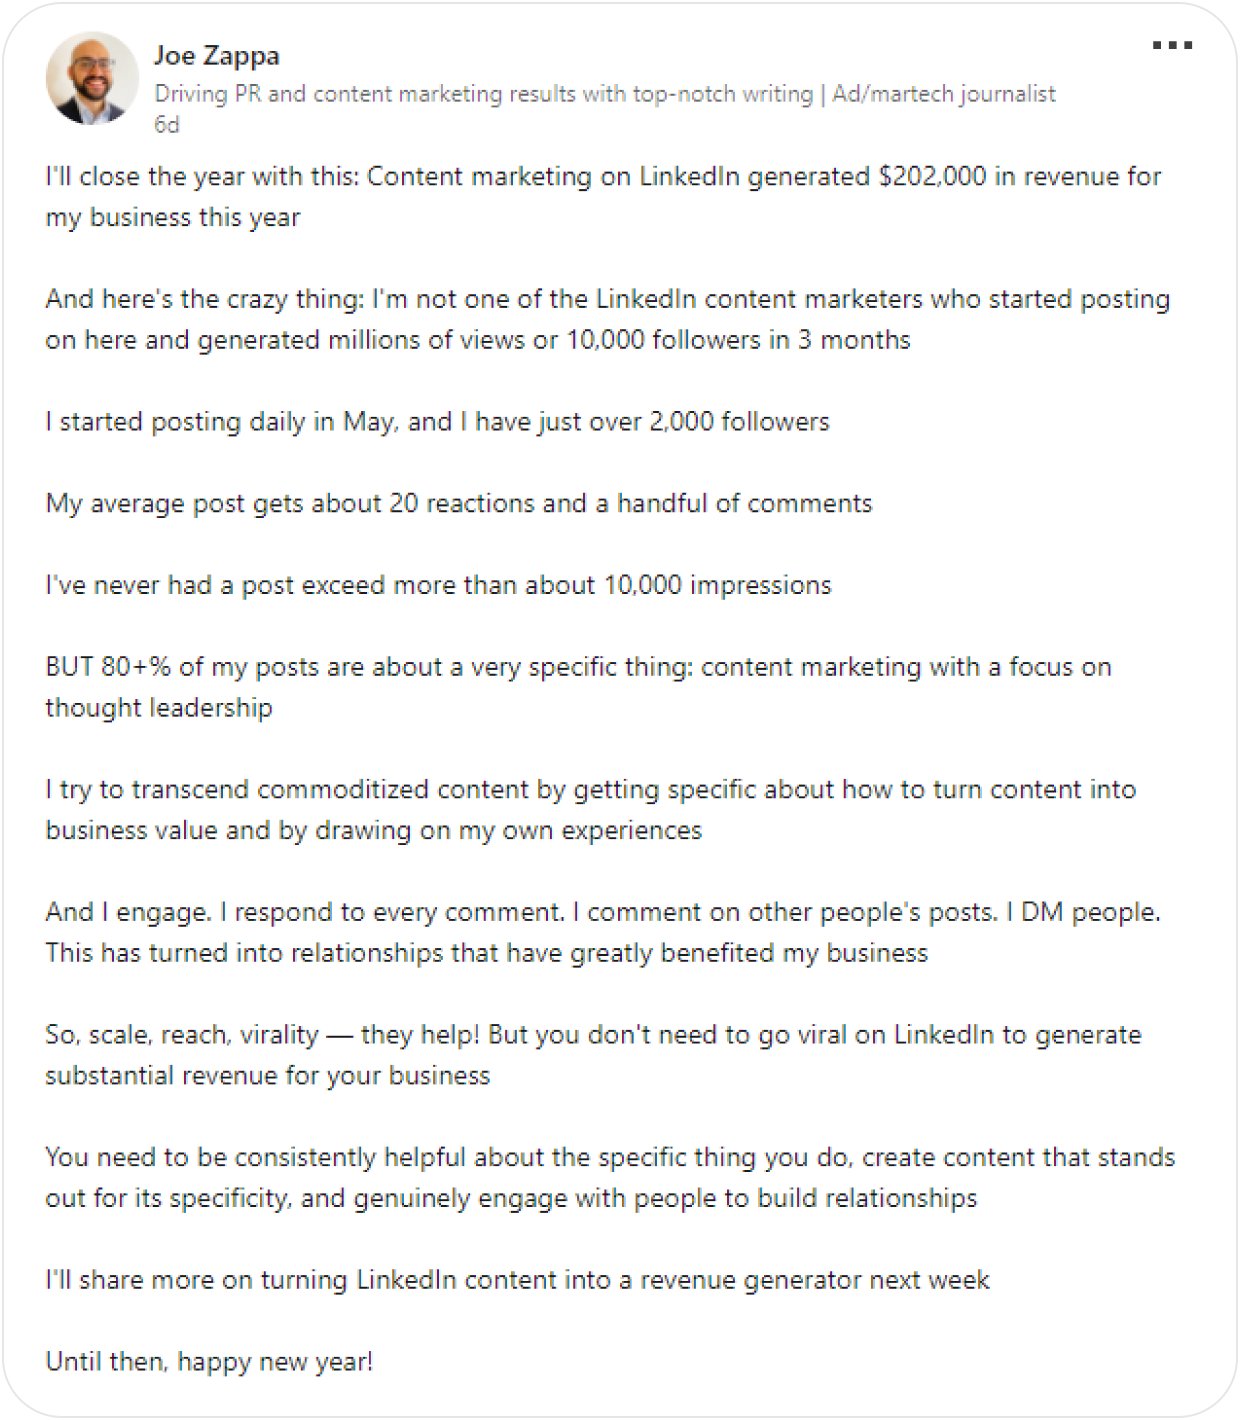 Joe Zappa's LinkedIn post on how social media marketing brought him over $200K in revenue.